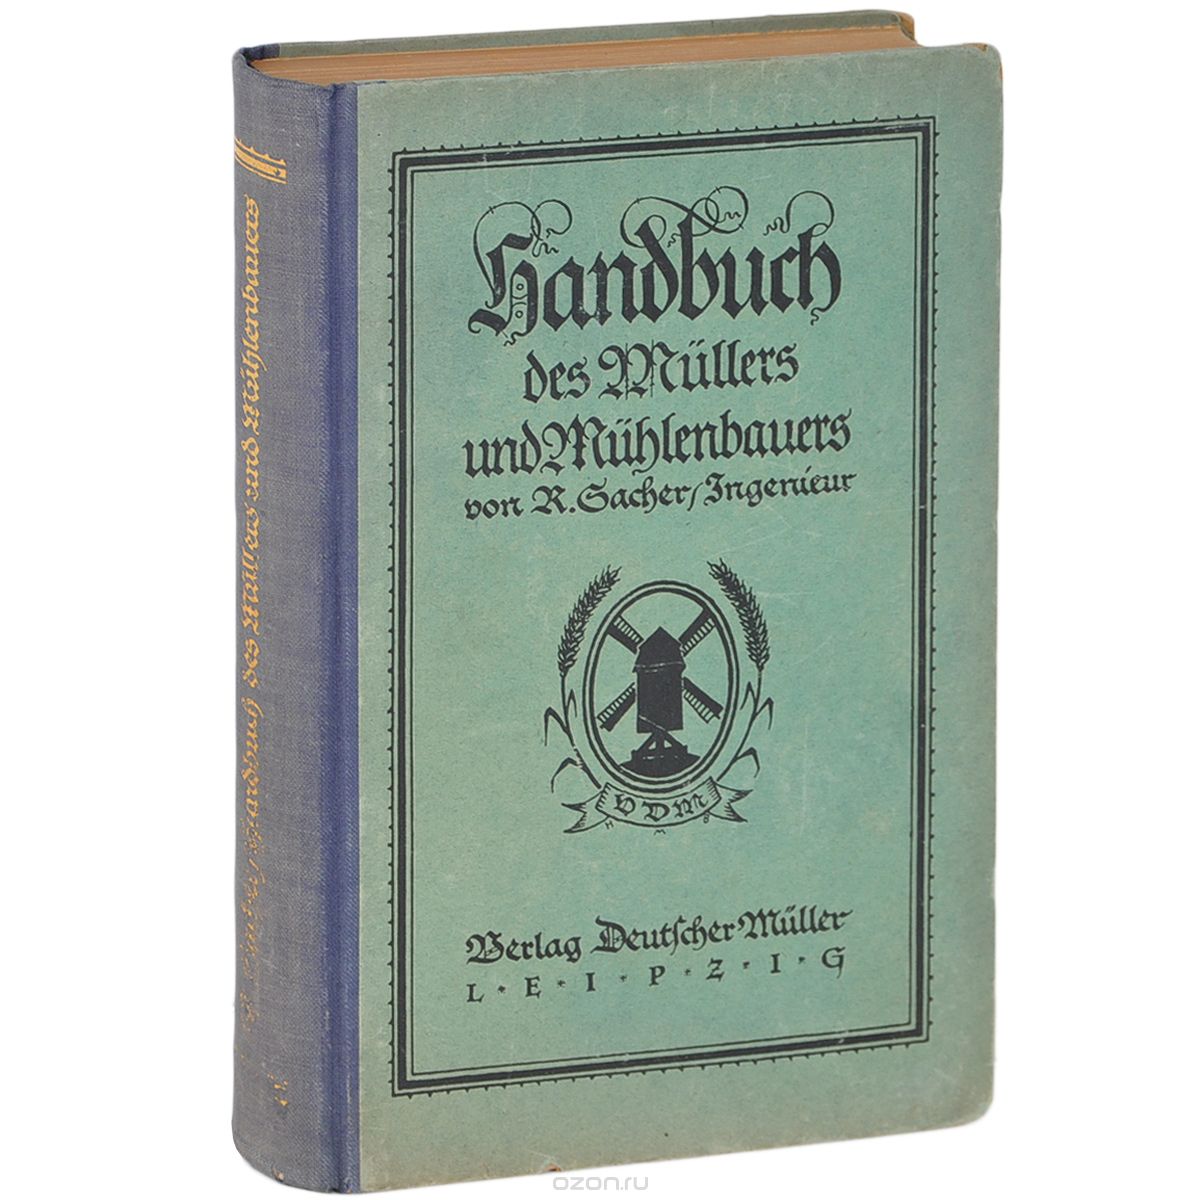 Скачать книгу "Handbuch des Mullers und Muhlenbauers"